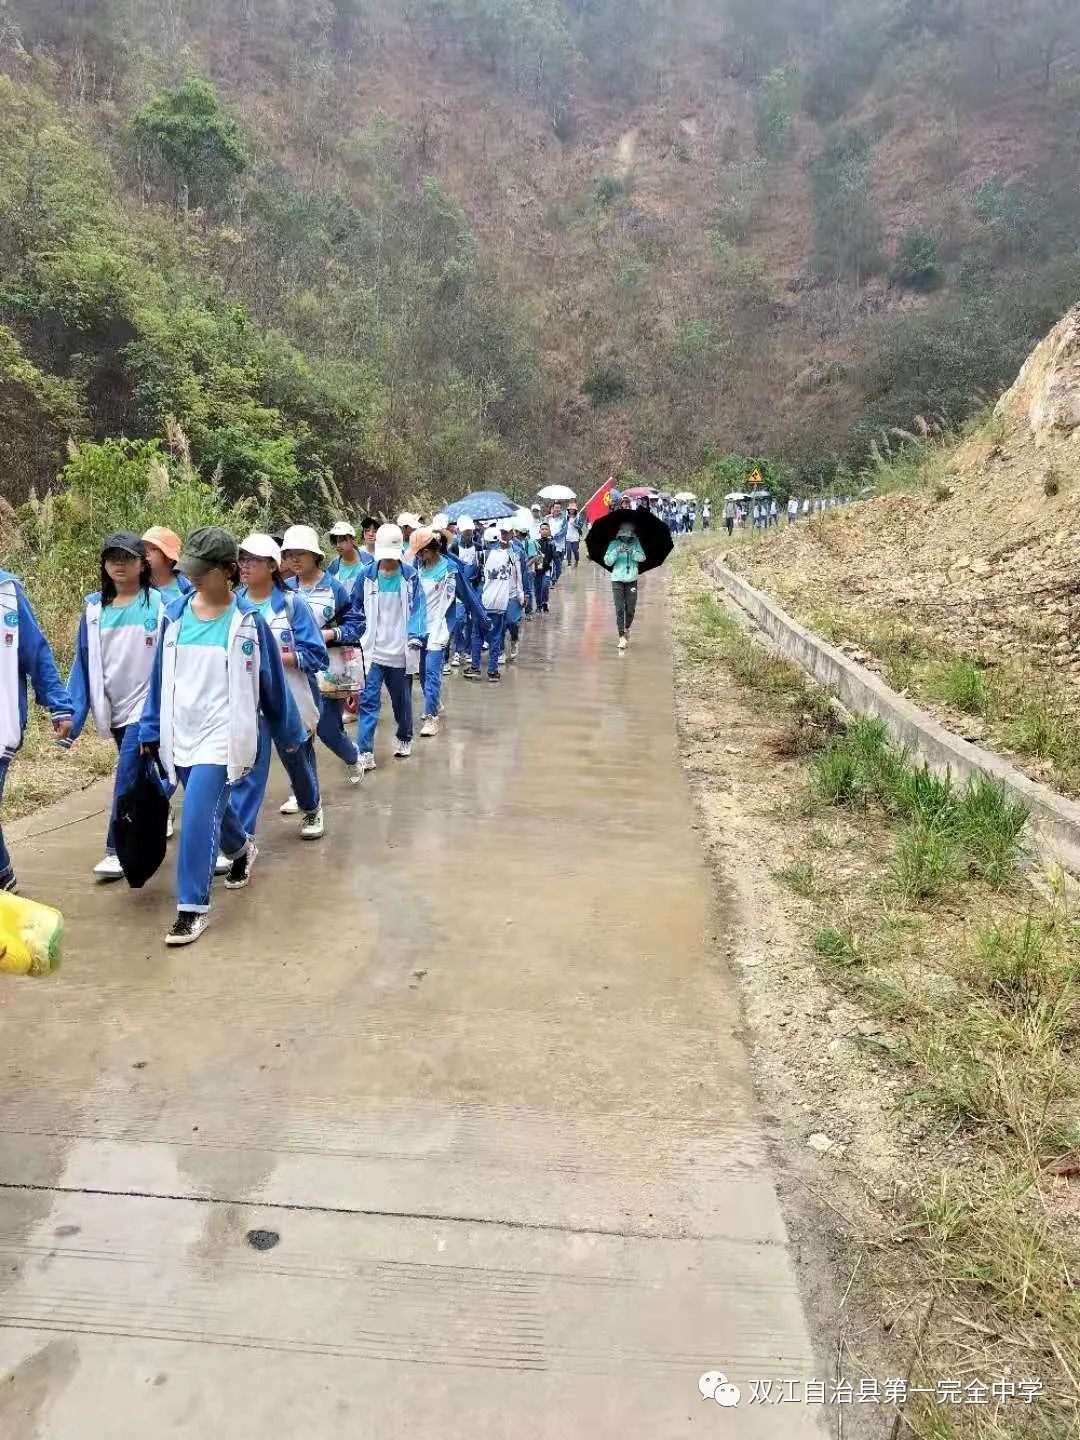 22公里远足!双江自治县第一完全中学用一堂“行走的思政课”让党史教育“活起来”(图169)